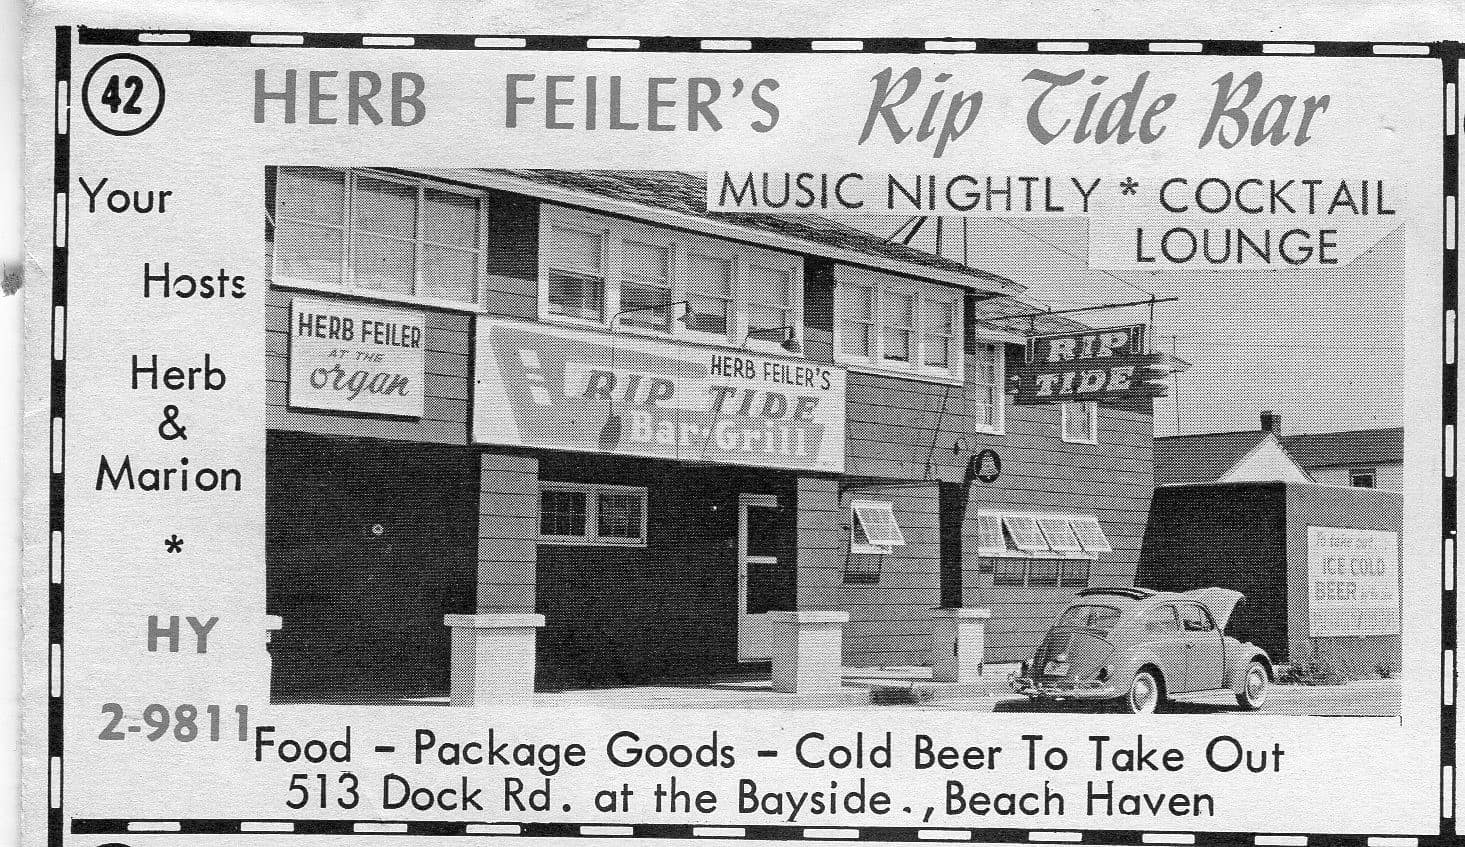 1963 Ad for Herb Feiler's Rip Tide Bar